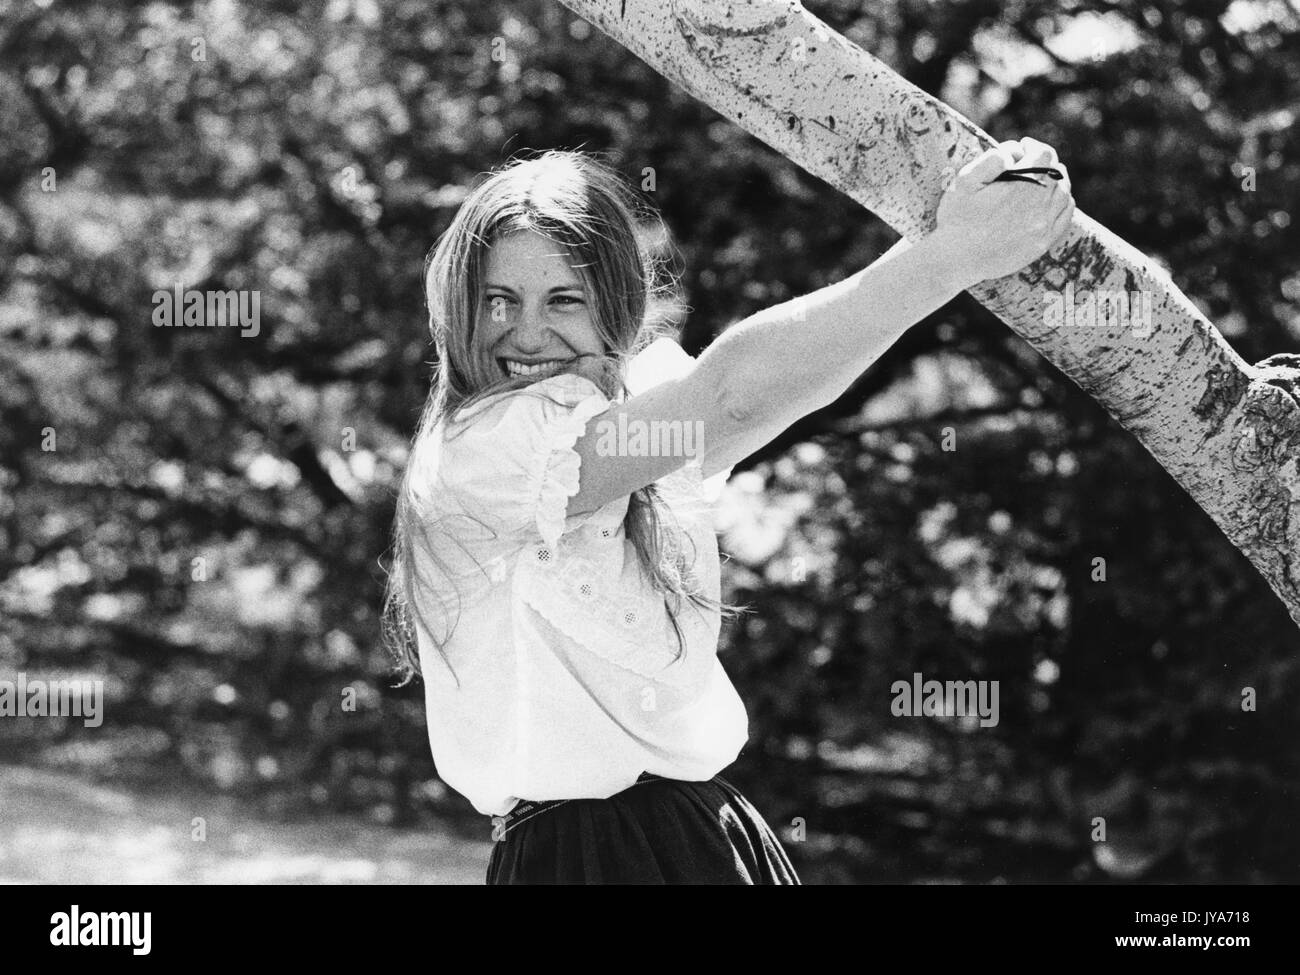 Una fotografia di una studentessa laureata alla Johns Hopkins University che si stende da un albero nel campus durante i primi anni di ammissione di donne nel programma di laurea, a Baltimora, Maryland. 1970. Foto Stock